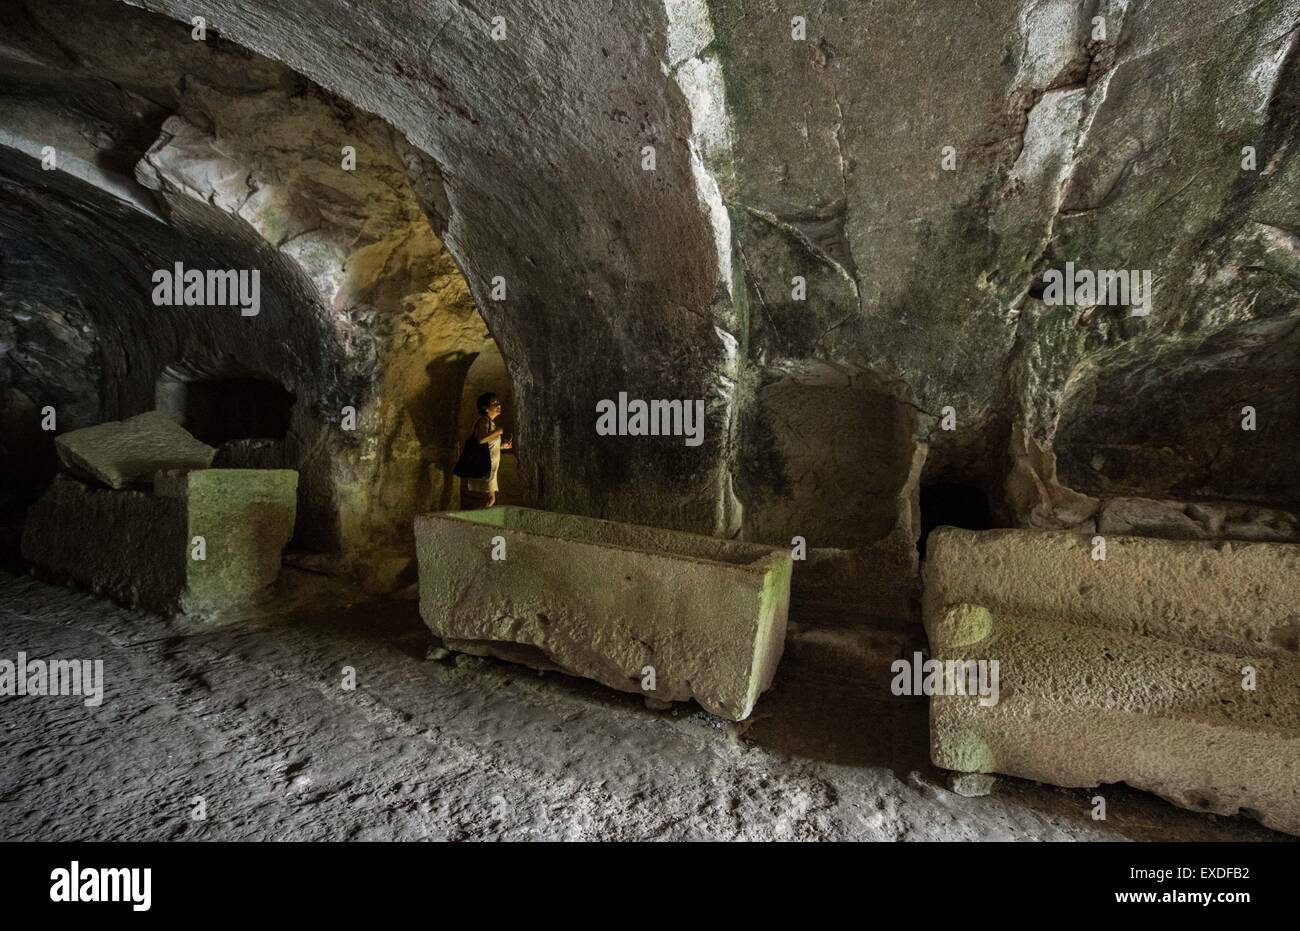 (150712) -- BET She'arim, le 12 juillet 2015 (Xinhua) -- une femme visite la grotte des cercueils à la Nécropole de Bet She'arim en Israël, le 11 juillet 2015. Nécropole de Bet She'arim en Israël, l'emblème de renouveau juif, a été inscrit sur la Liste du patrimoine mondial de l'UNESCO le 4 juillet 2015. Composé d'une série de catacombes, la nécropole développée à partir du 2e siècle avant notre ère comme le principal lieu de sépulture juive en dehors de Jérusalem à la suite de l'échec de la seconde révolte juive contre la domination romaine. Situé à au sud-est de la ville de Haïfa, ces catacombes sont un trésor d'oeuvres et d'inscriptions en Gr Banque D'Images